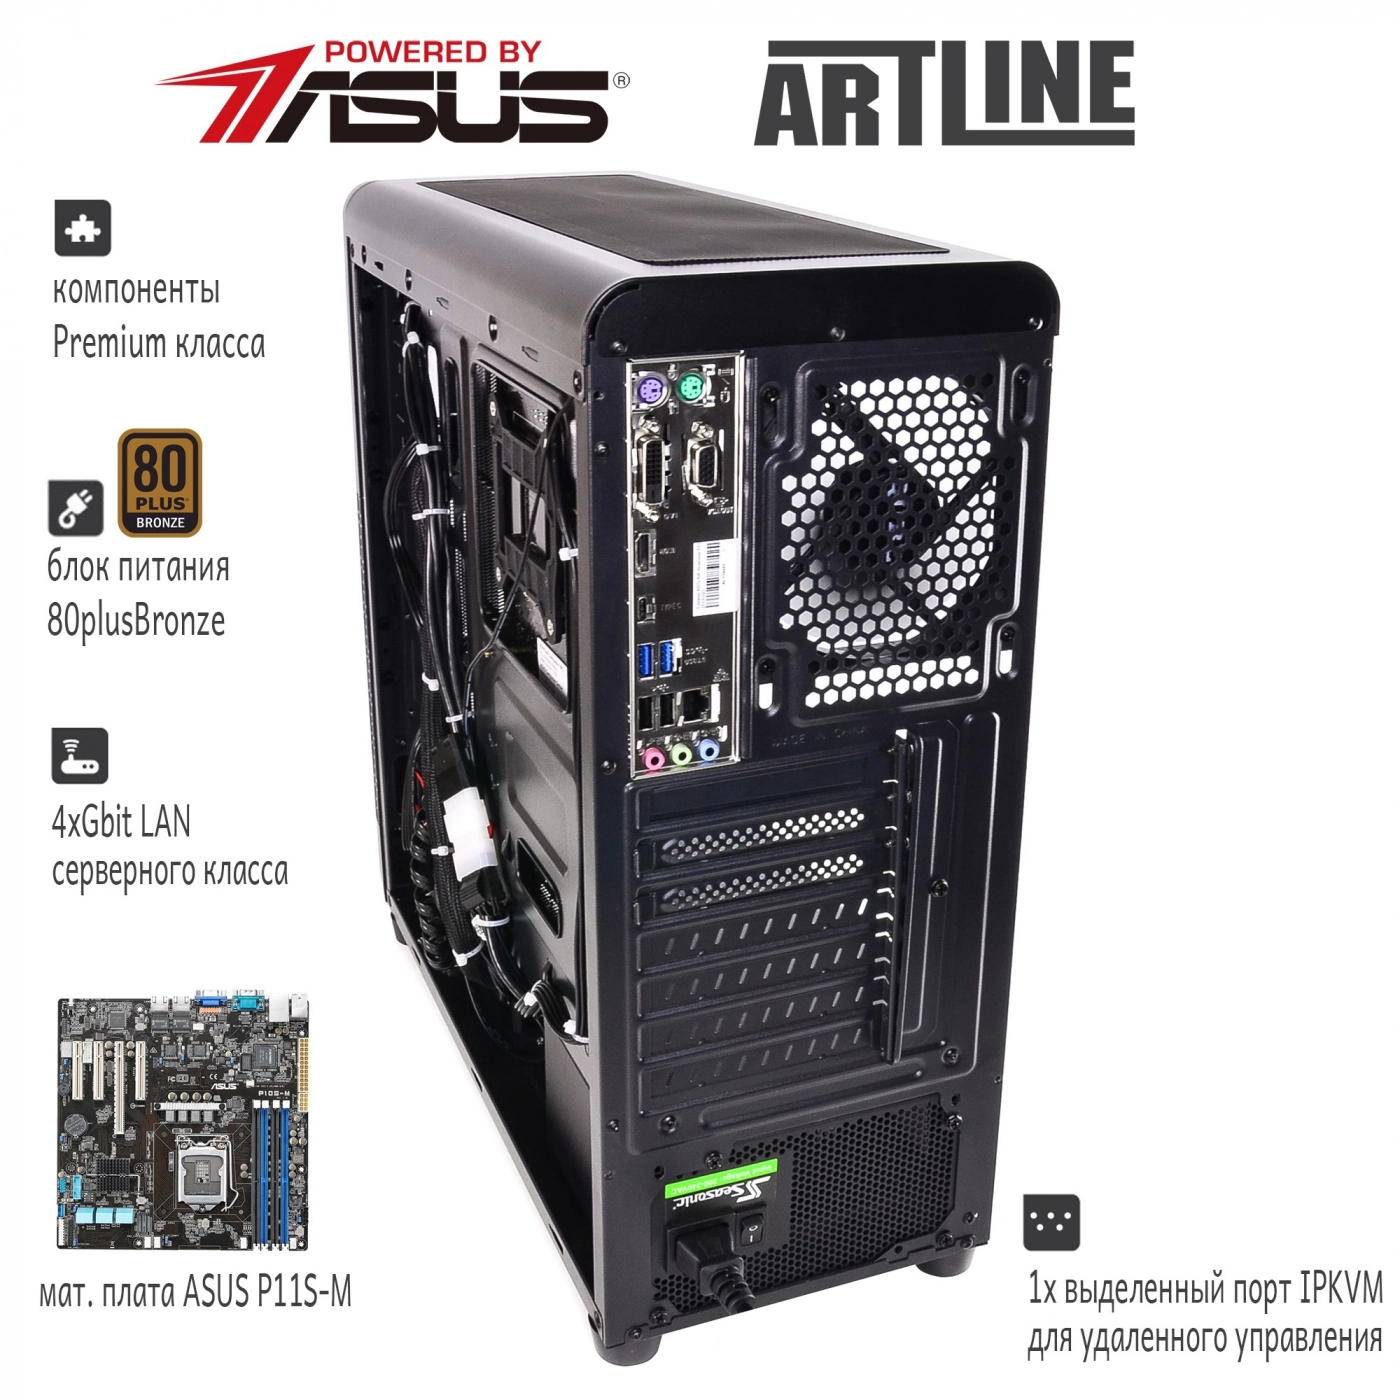 Купить Сервер ARTLINE Business T27v08 - фото 3